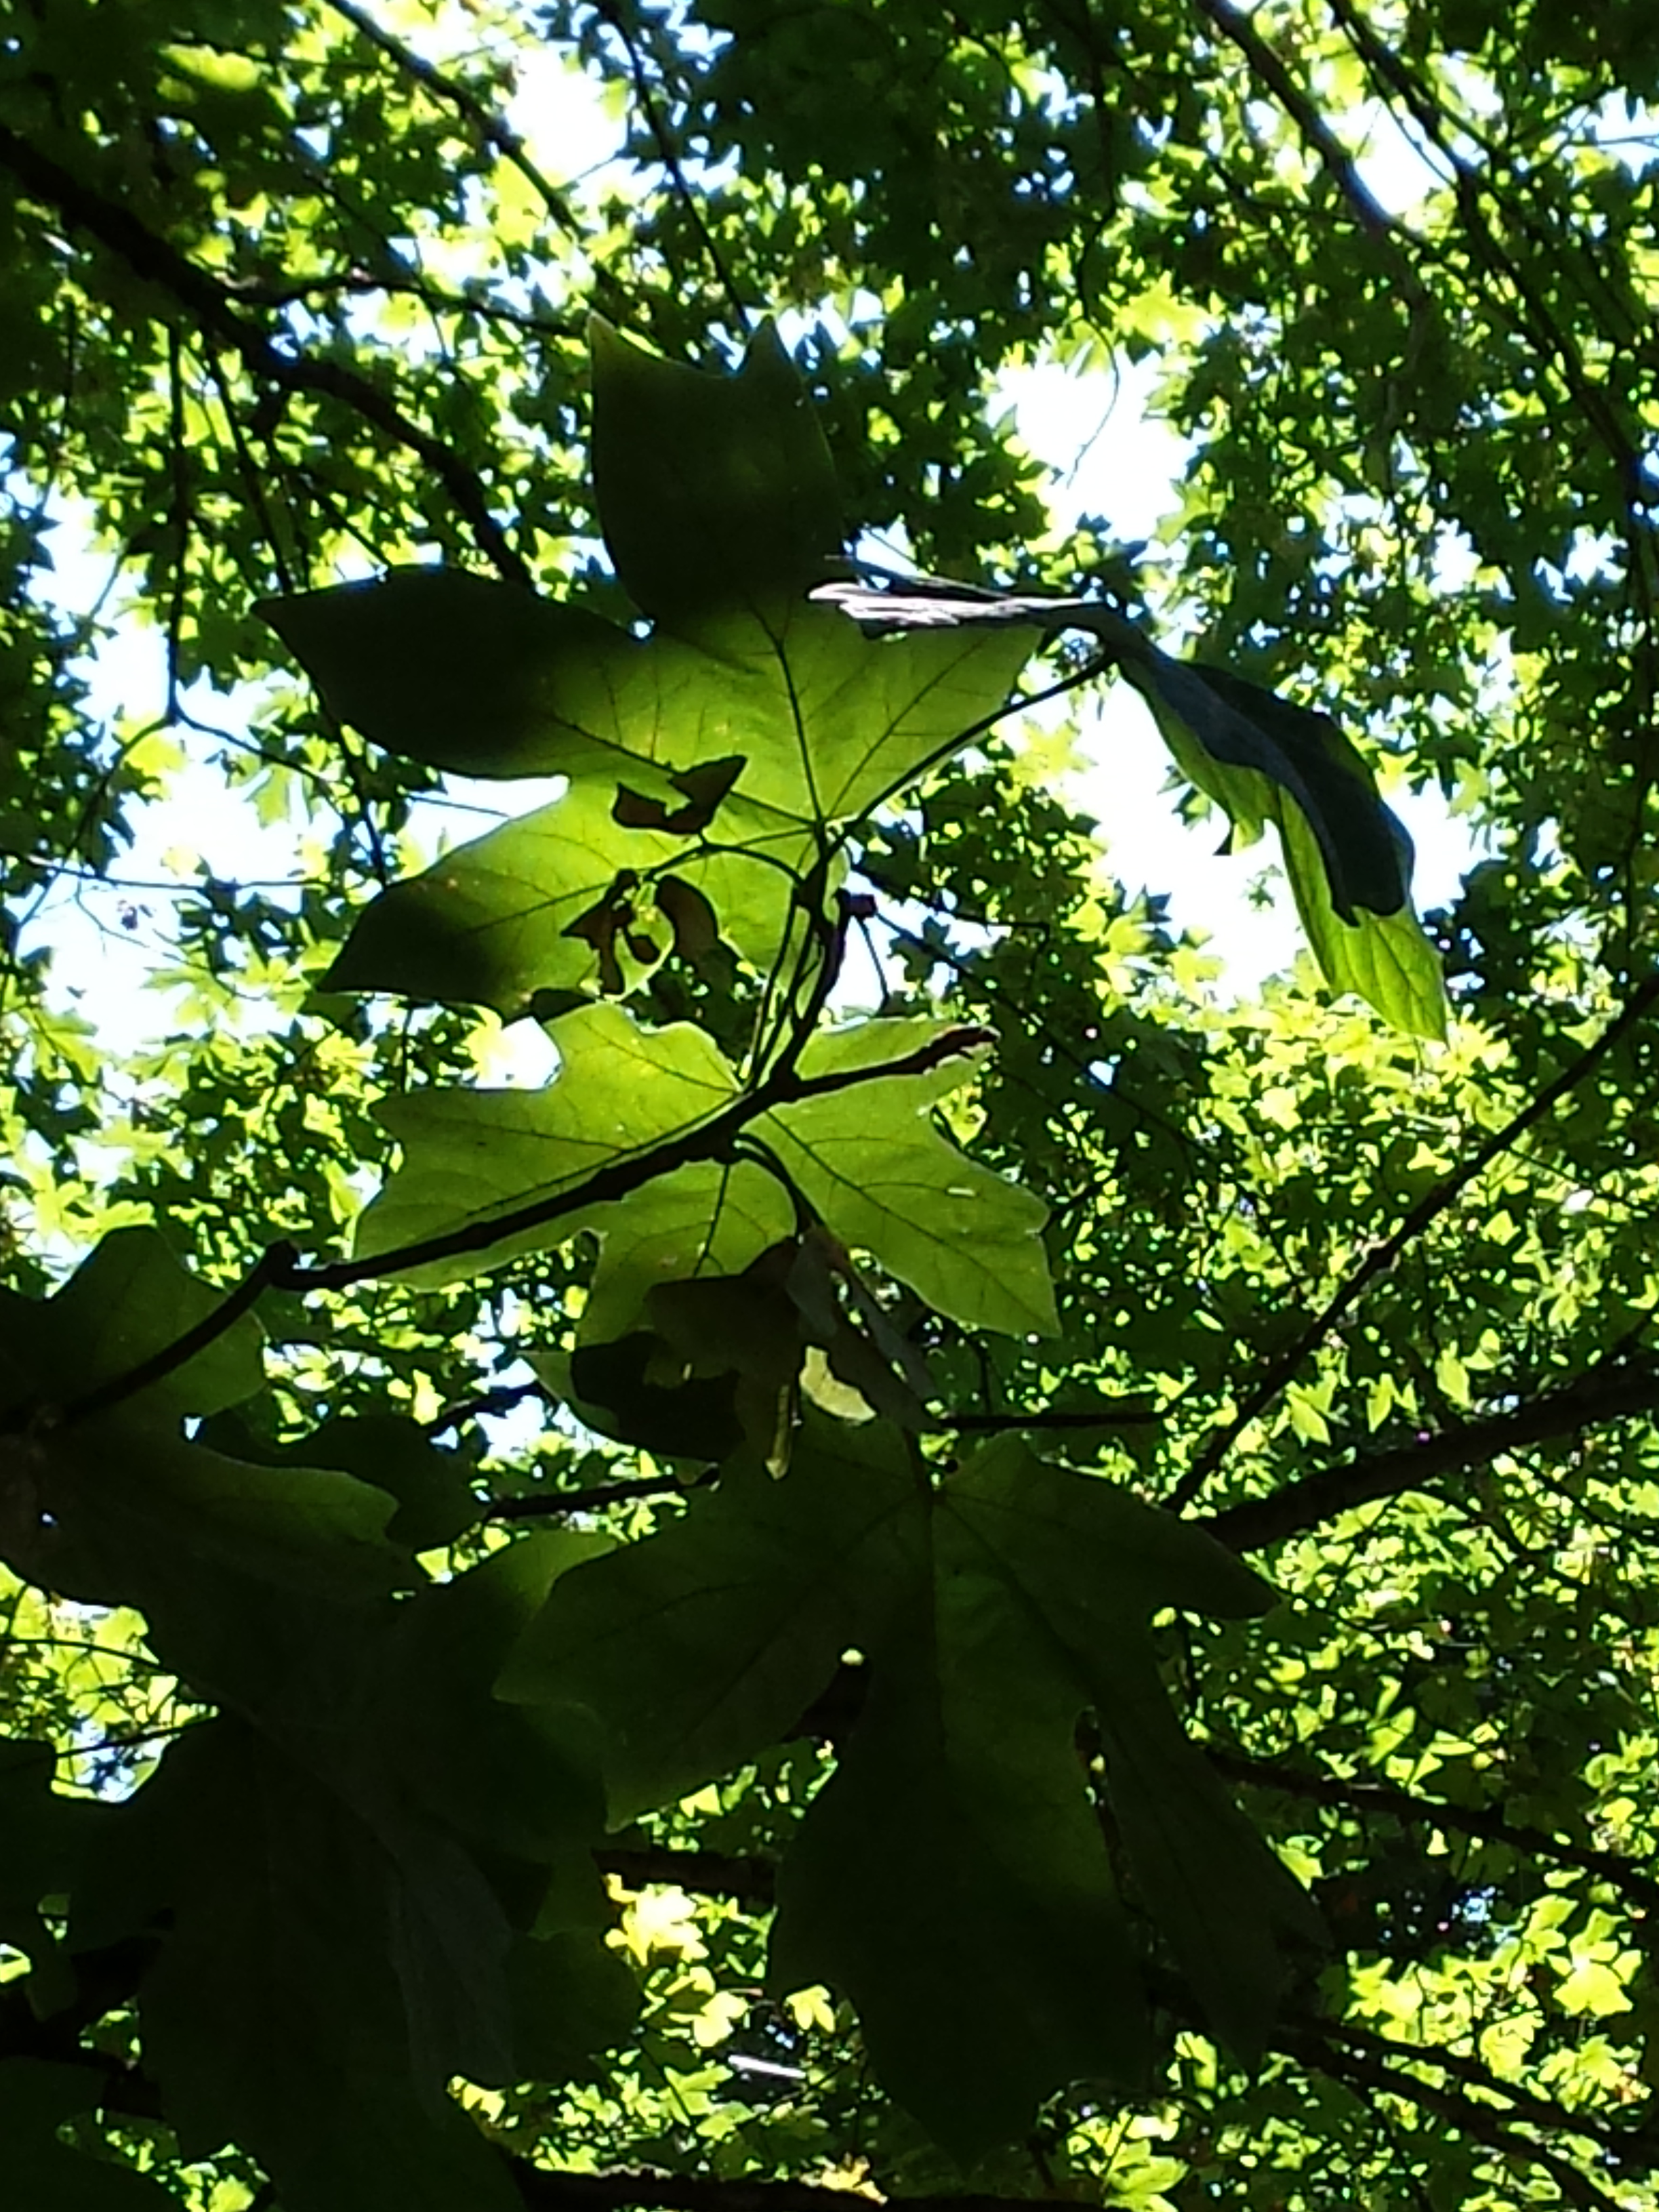 Big Leaf or Oregon Maple (Acer macrophyllum) - Heritage Fruit Trees